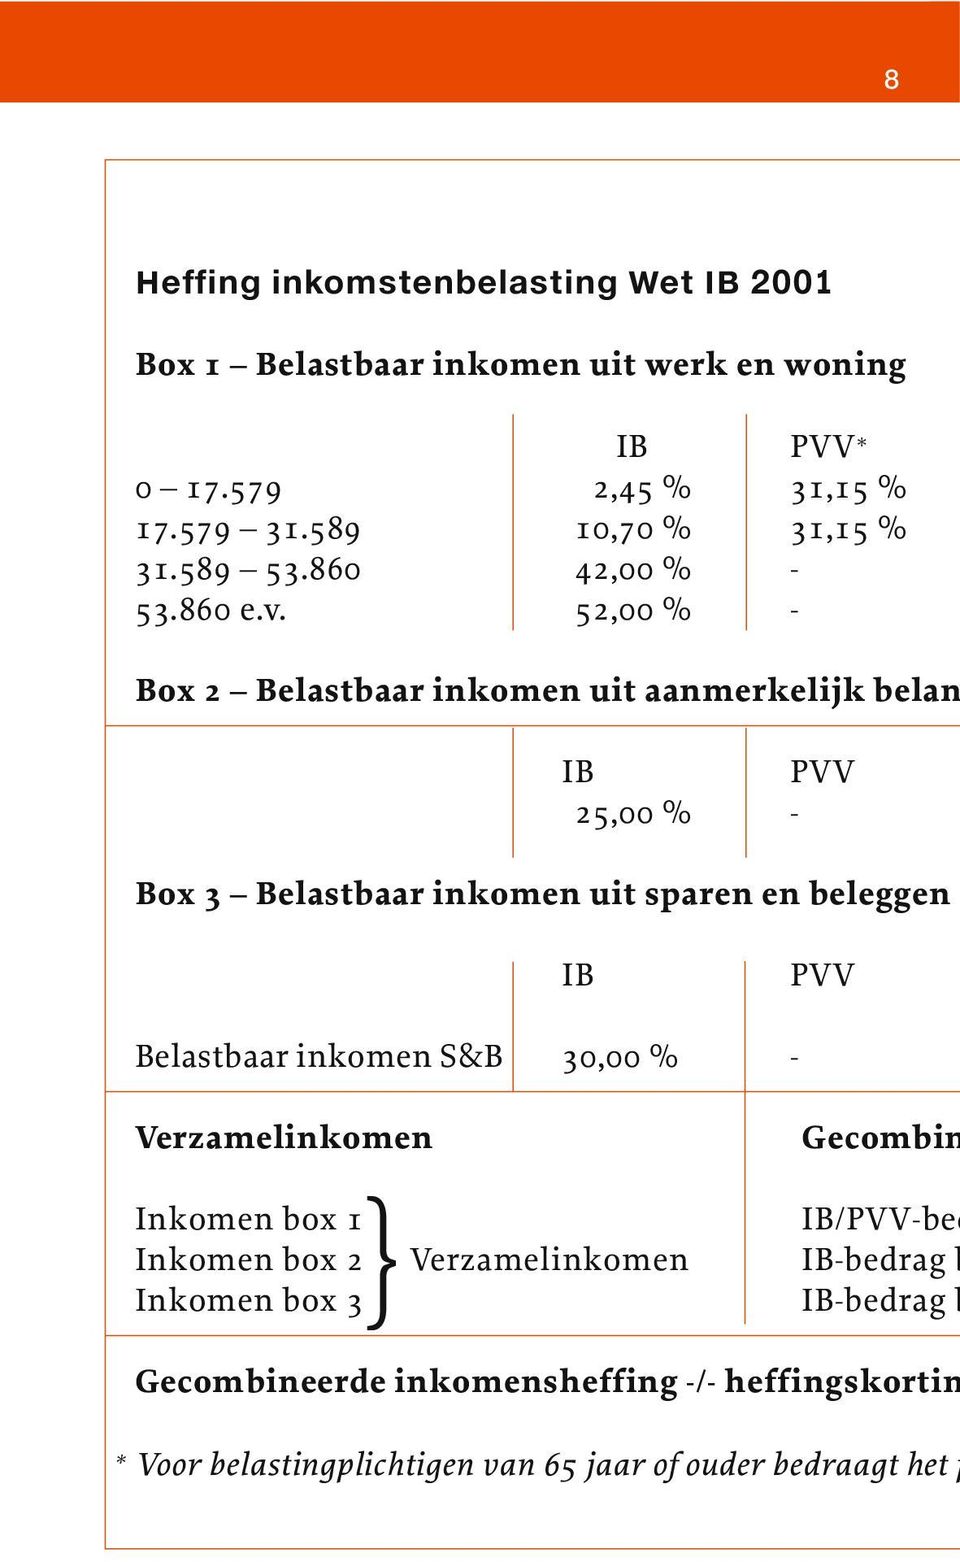 52,00 % - Box 2 Belastbaar inkomen uit aanmerkelijk belan IB PVV 25,00 % - Box 3 Belastbaar inkomen uit sparen en beleggen IB PVV Belastbaar